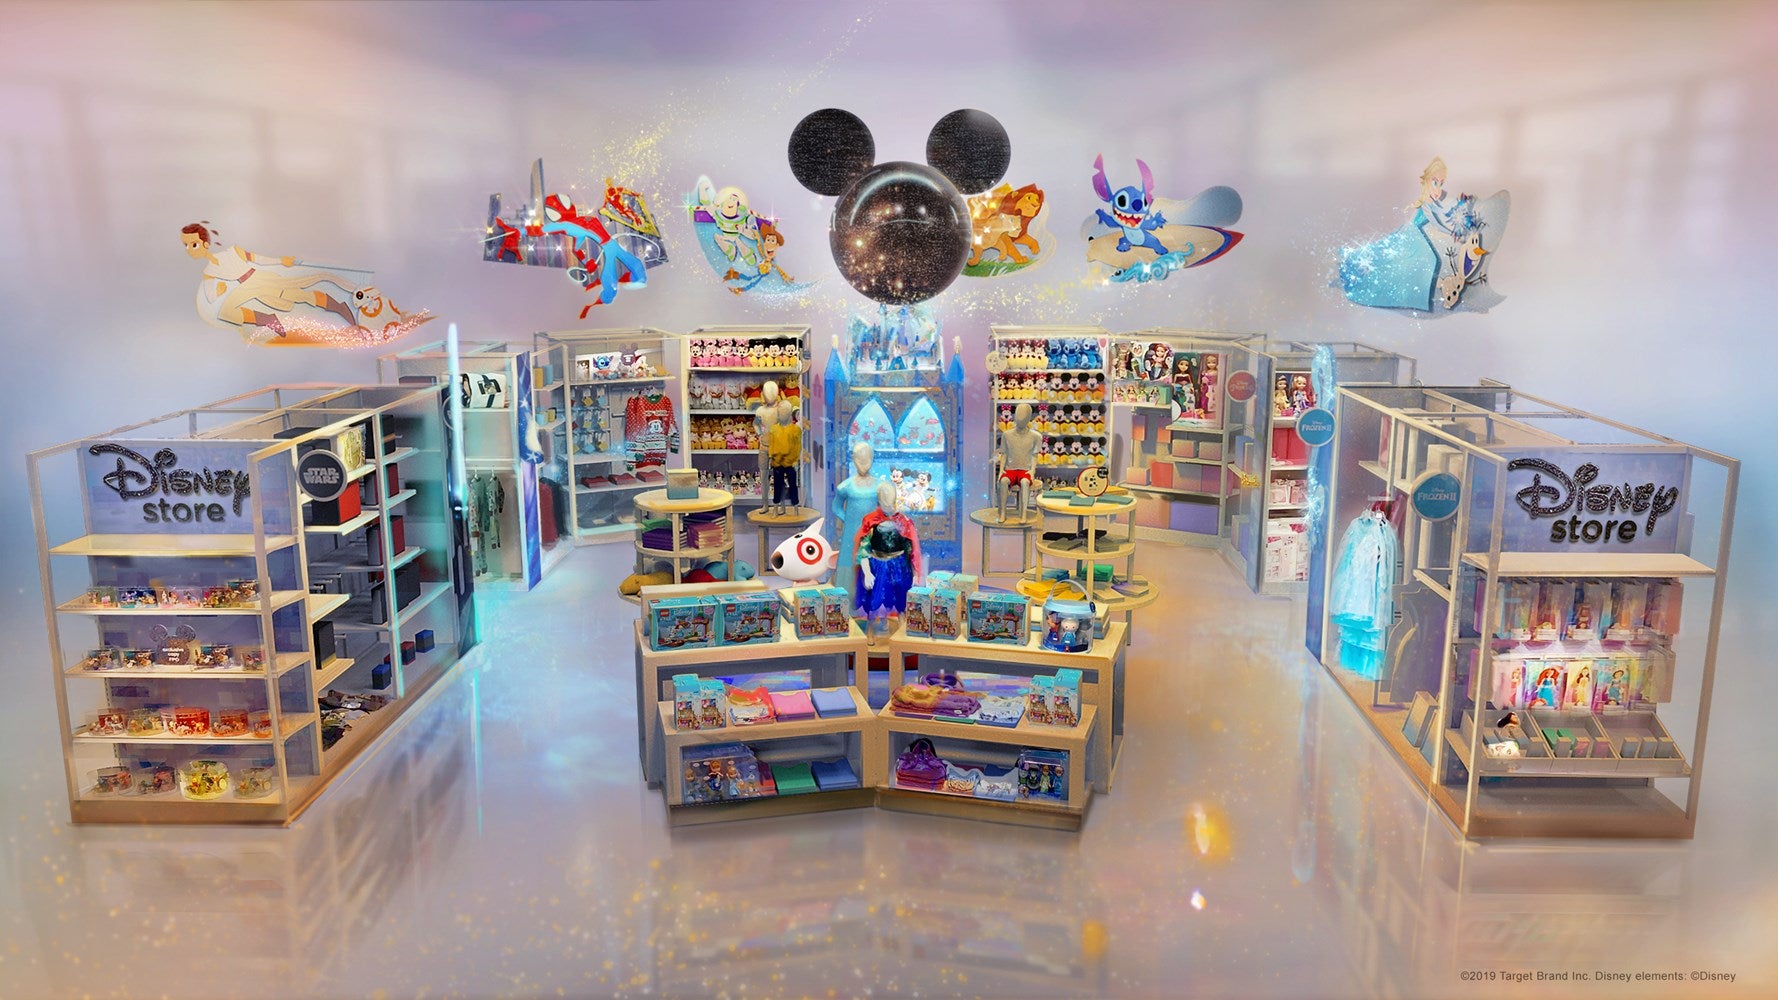 Disney_store_at_Target